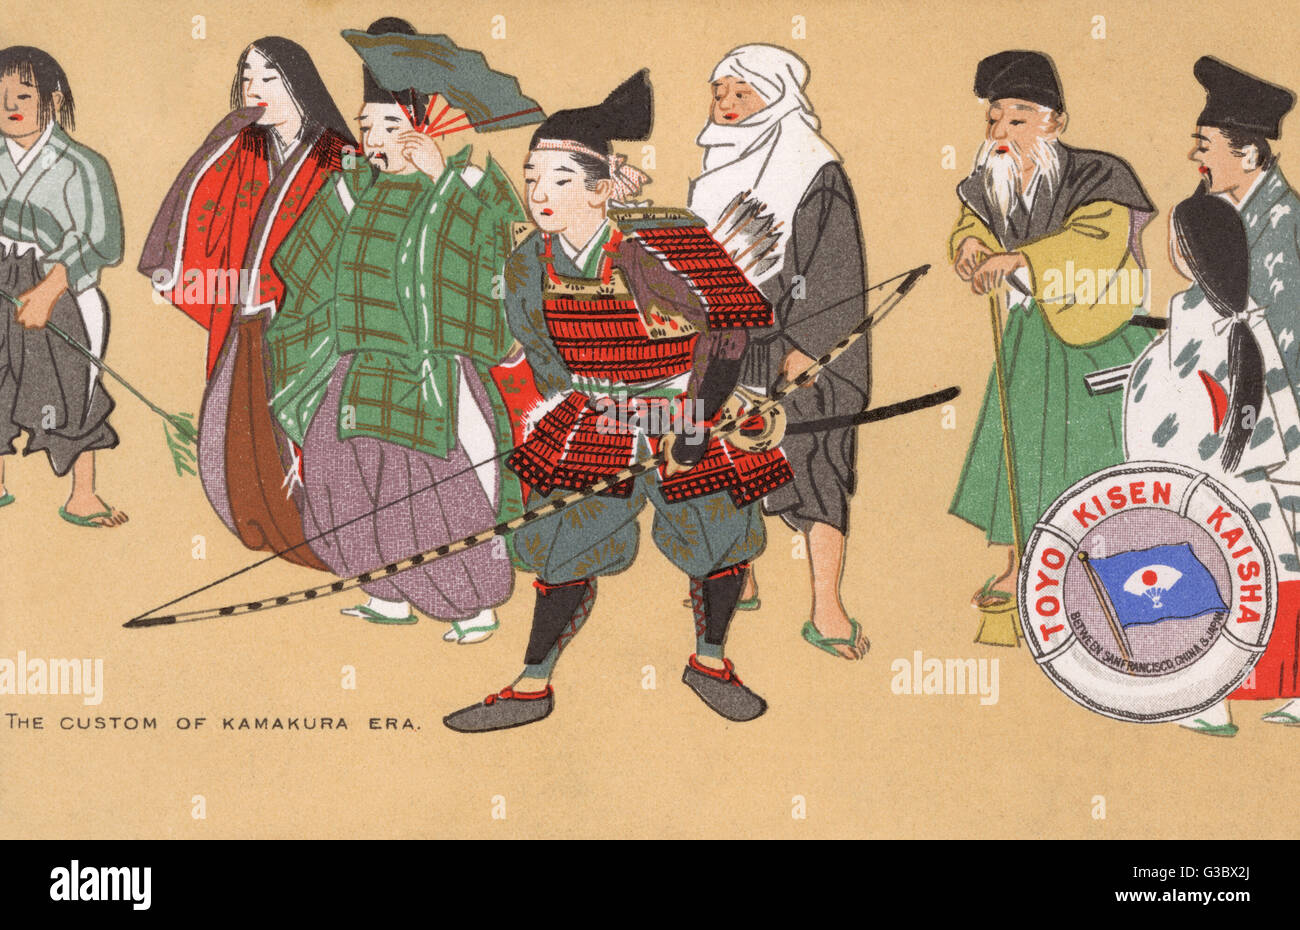 Bella giapponese cartolina promozionale per il Toyo Kisen Kaisha Shipping Company che gestiva servizi tra San Francisco, Cina e Giappone. Data: circa cinquecento Foto Stock